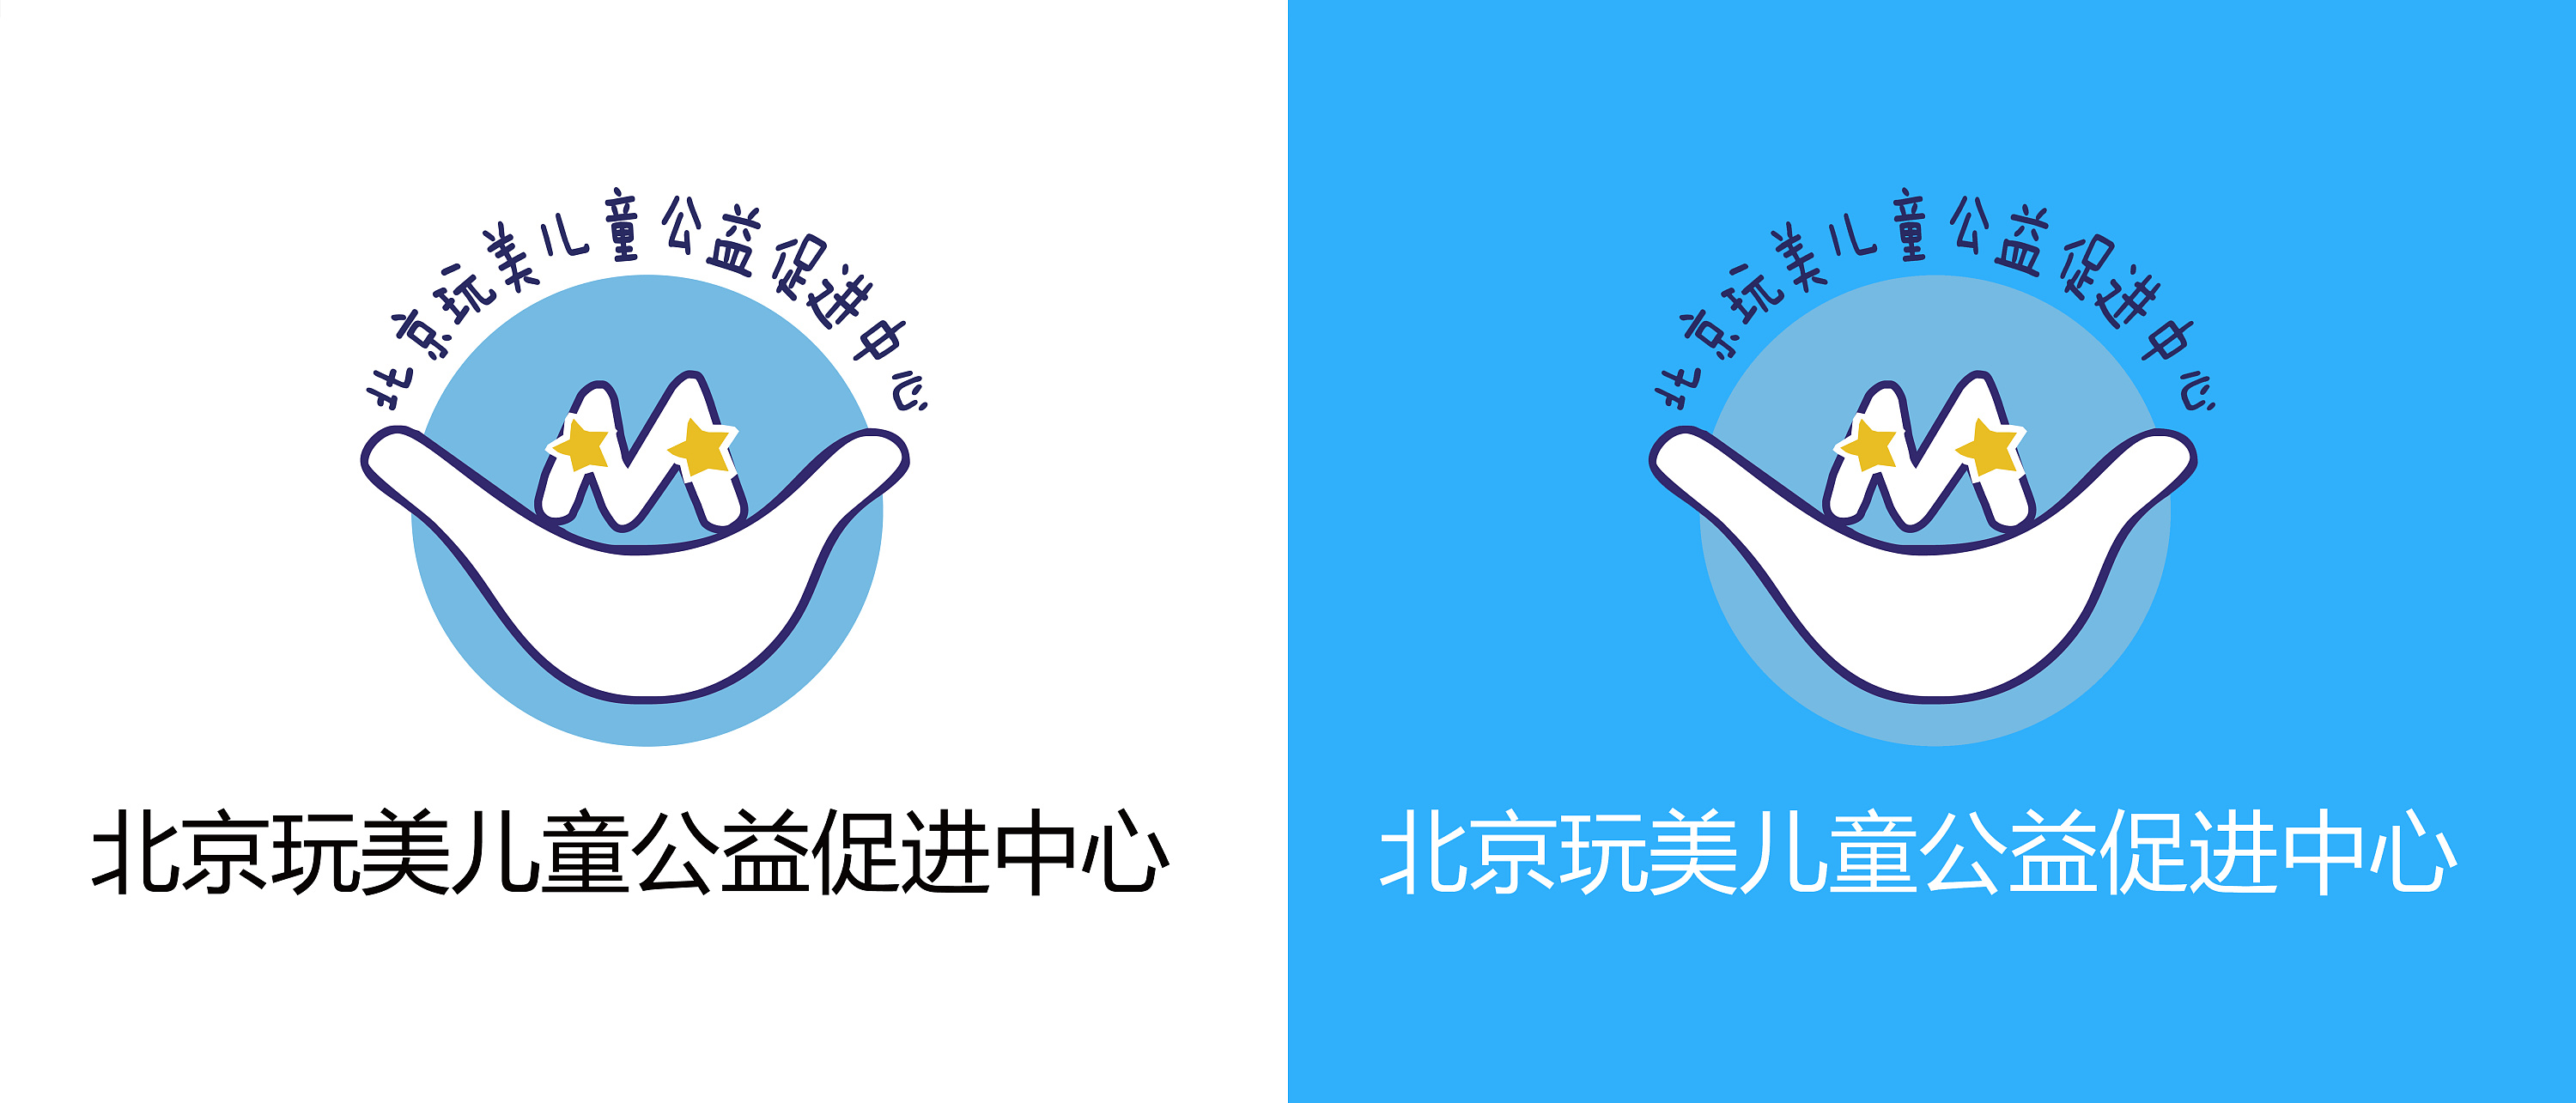 北京玩美儿童公益促进中心 logo 设计